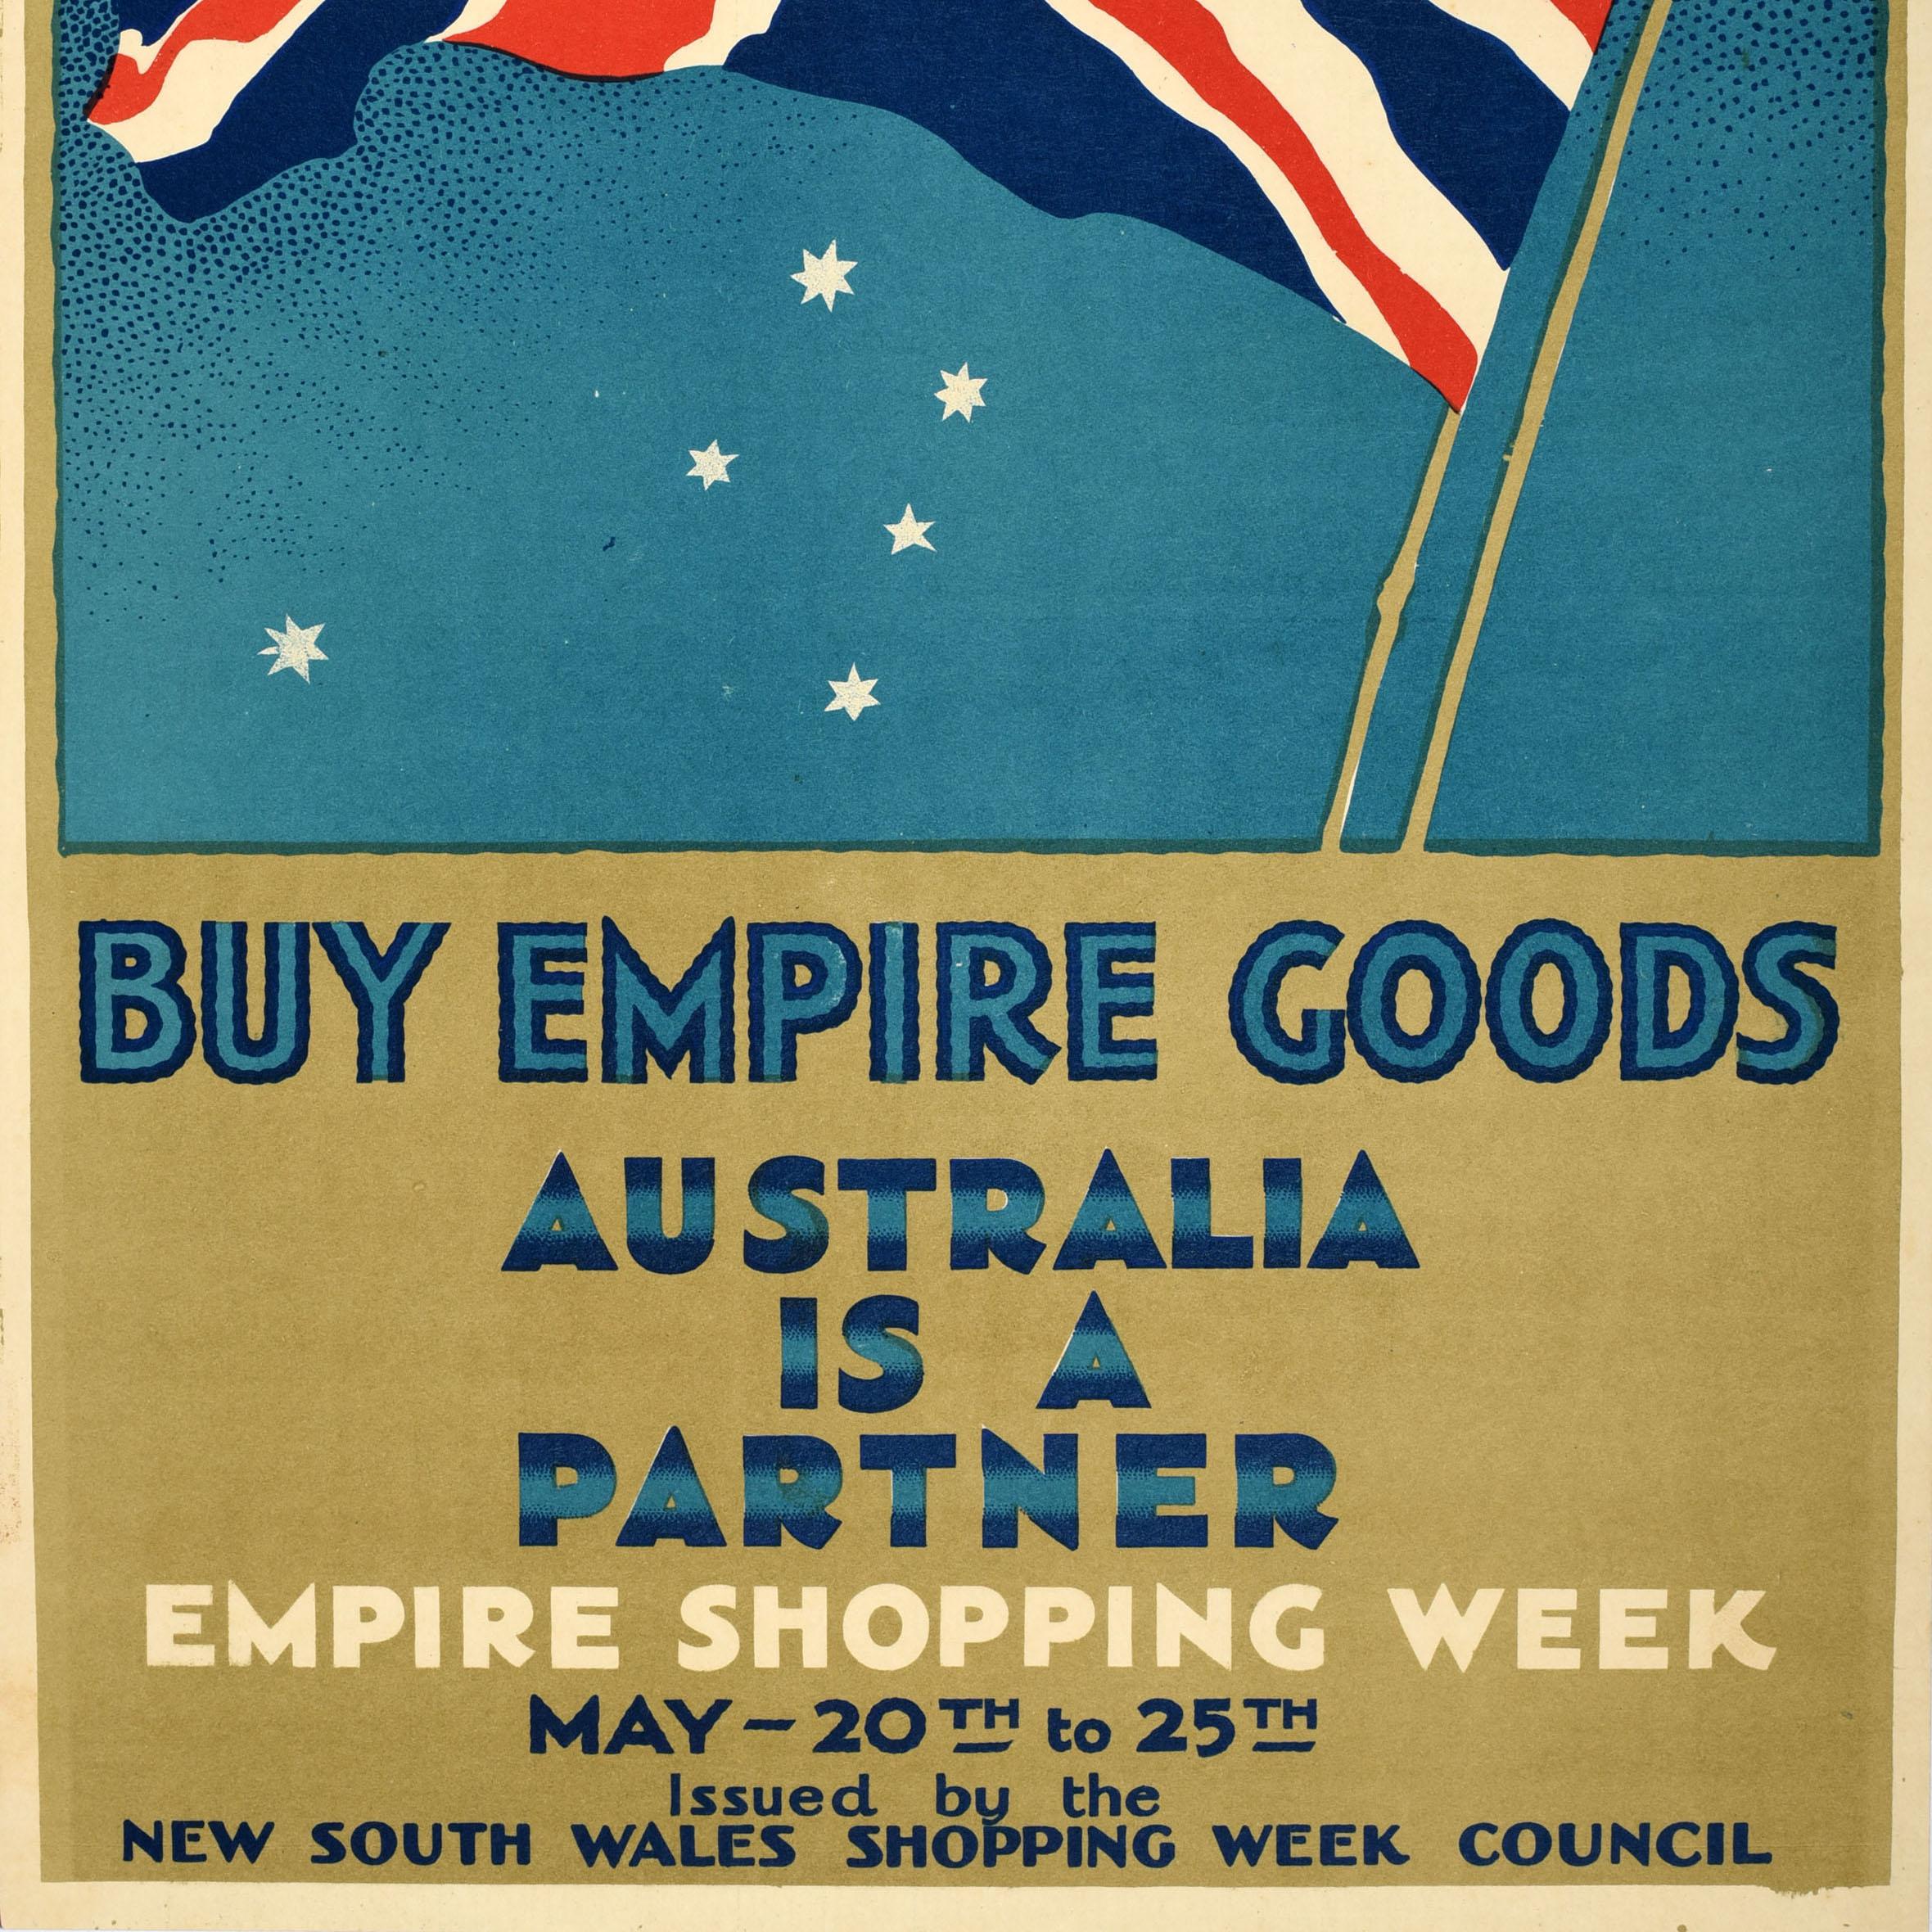 Original Vintage-Werbeplakat - Buy Empire Goods Australia is a Partner Empire Shopping Week 20 to 25 May, herausgegeben vom New South Wales Shopping Week Council - mit einer Illustration der Flagge des Union Jack, die vor einem weißen